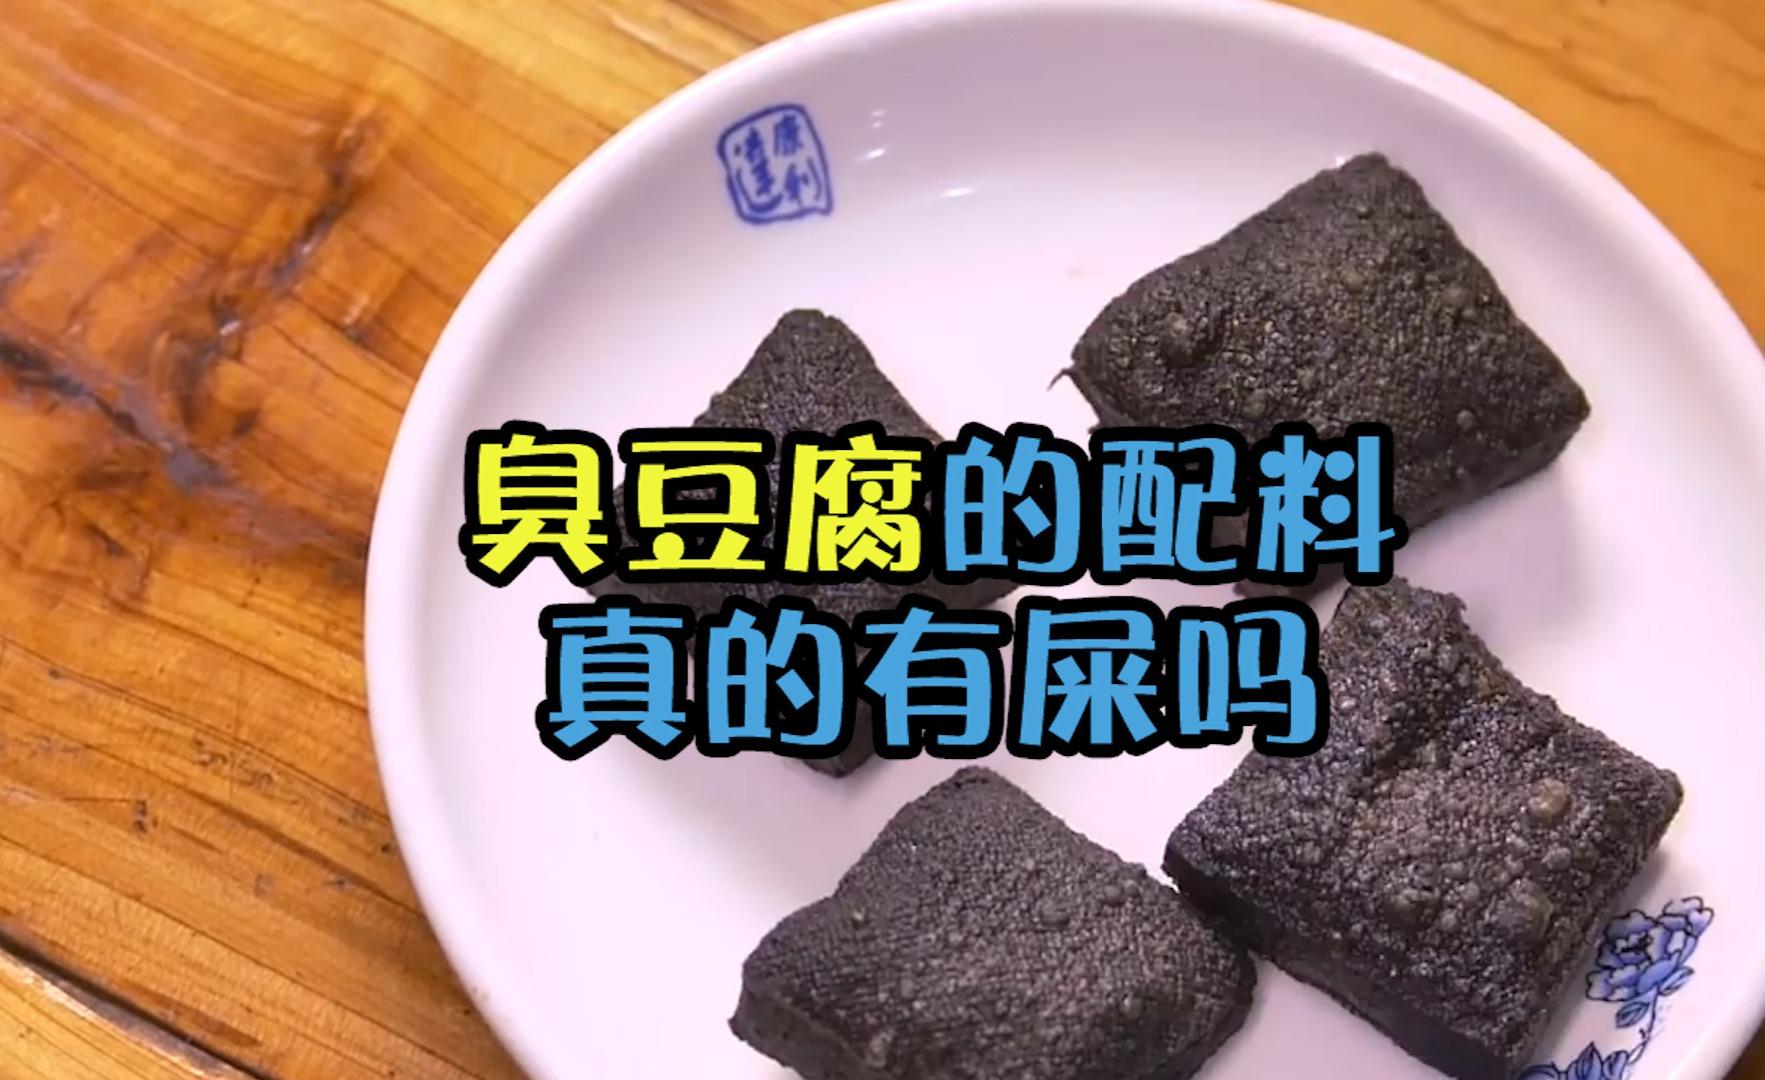 传统臭豆腐的配料里真的有"屎"吗?